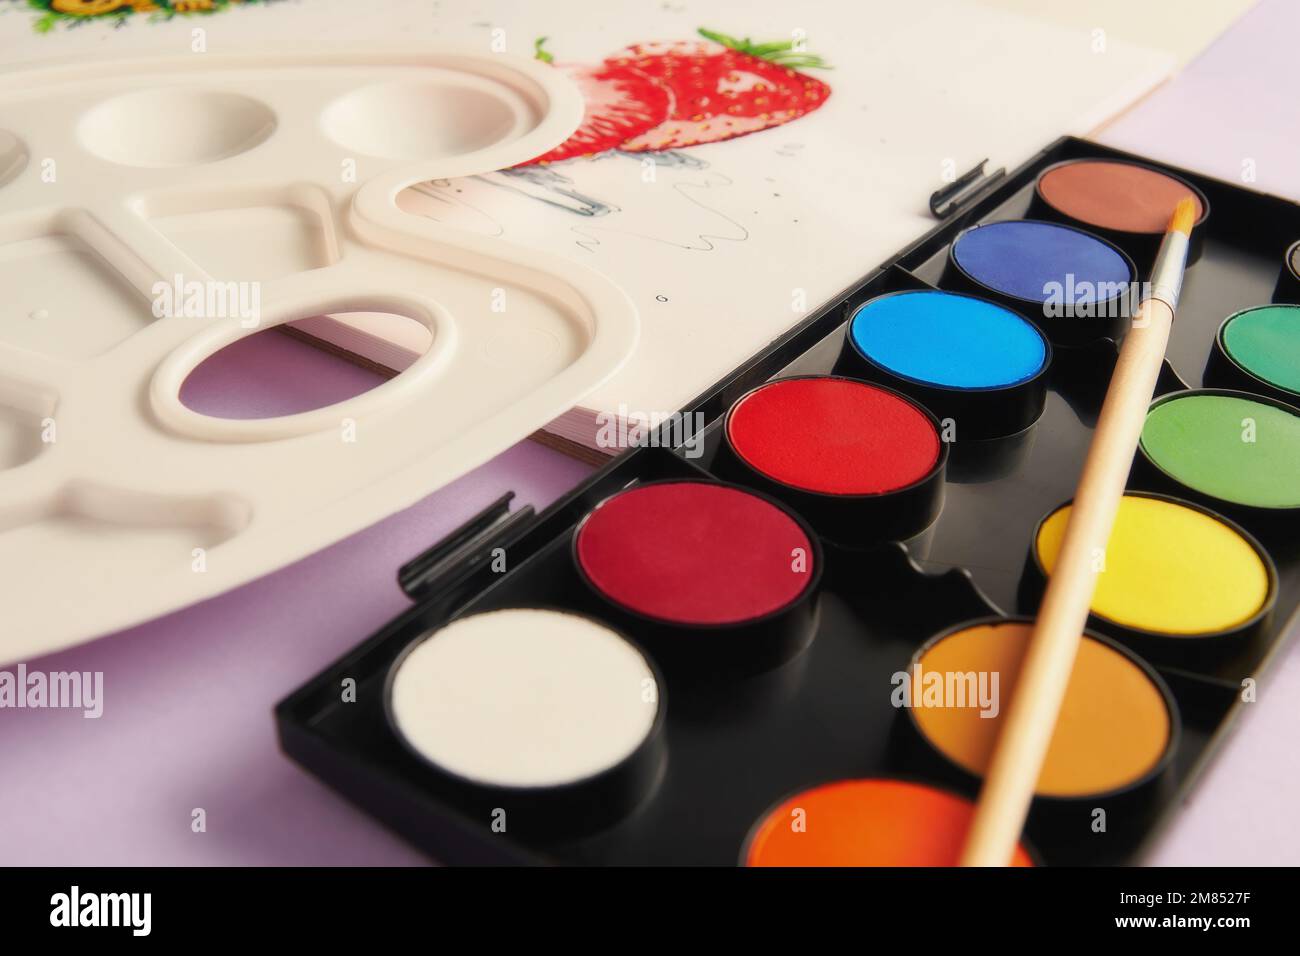 Peintures colorées, pinceau, palette et une image de fruits en perspective. Activités de loisirs et passe-temps. Modèle d'image en tons Banque D'Images